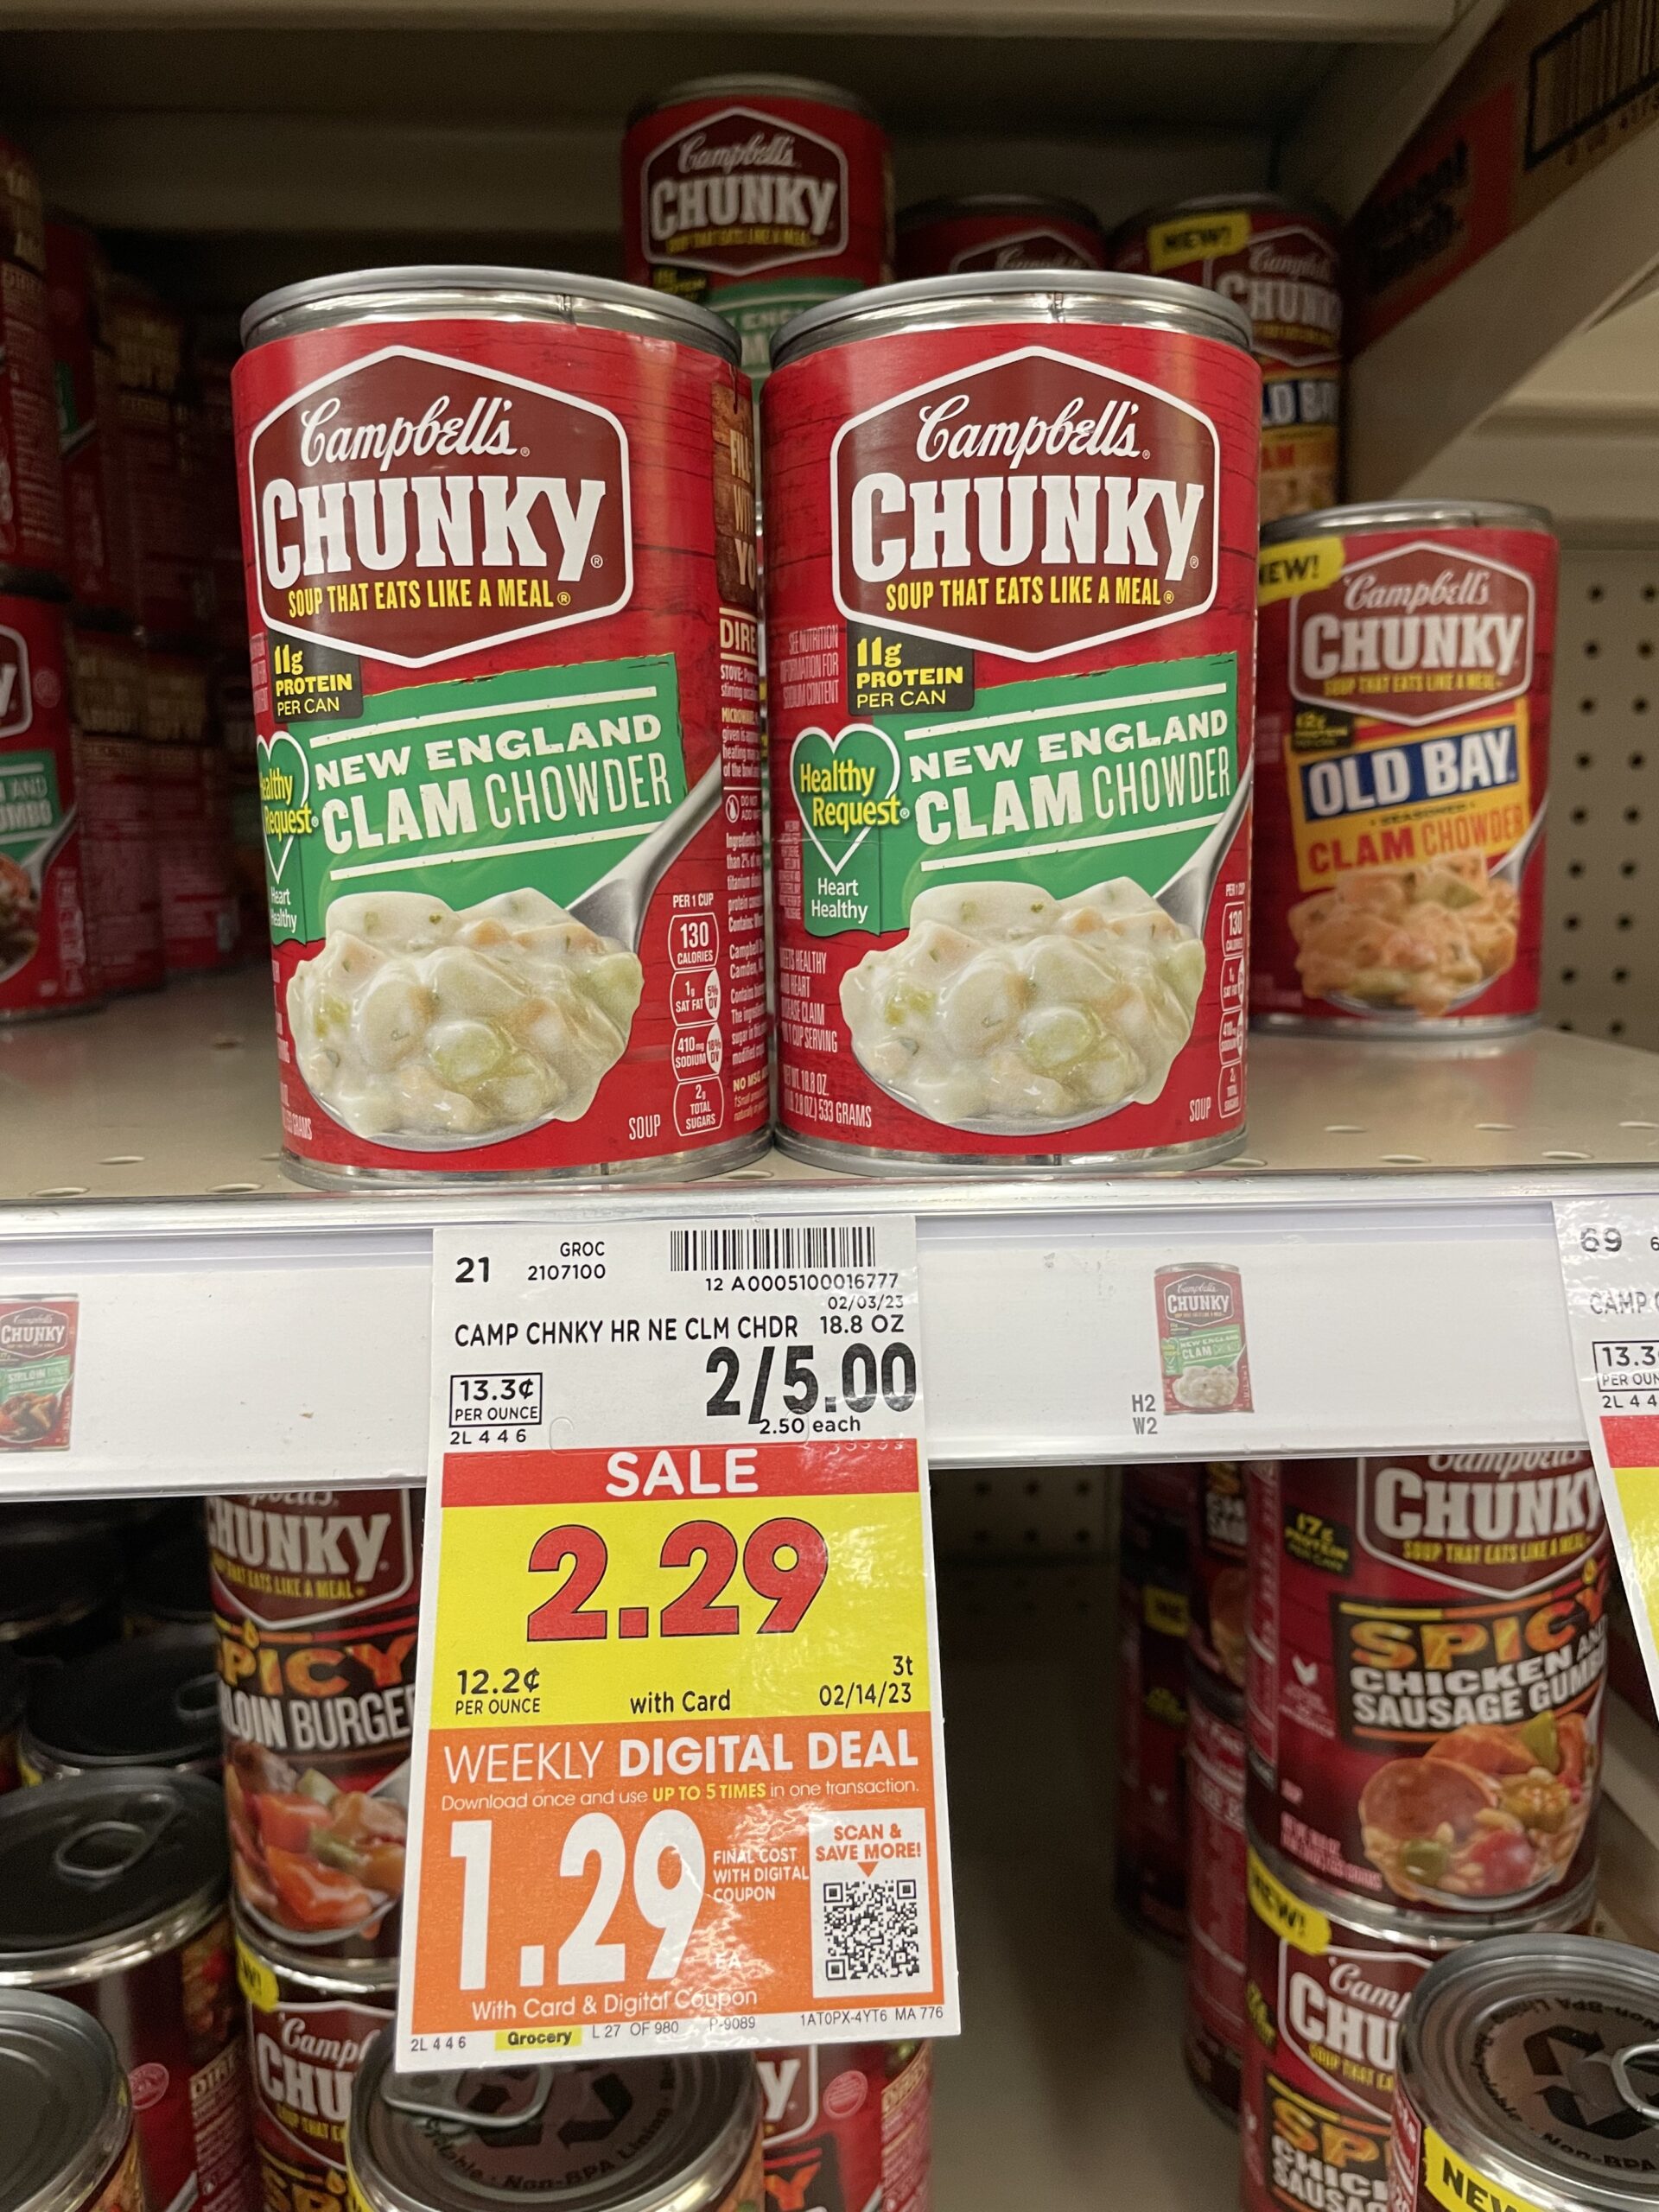 campbell's chunky soup kroger shelf image 5